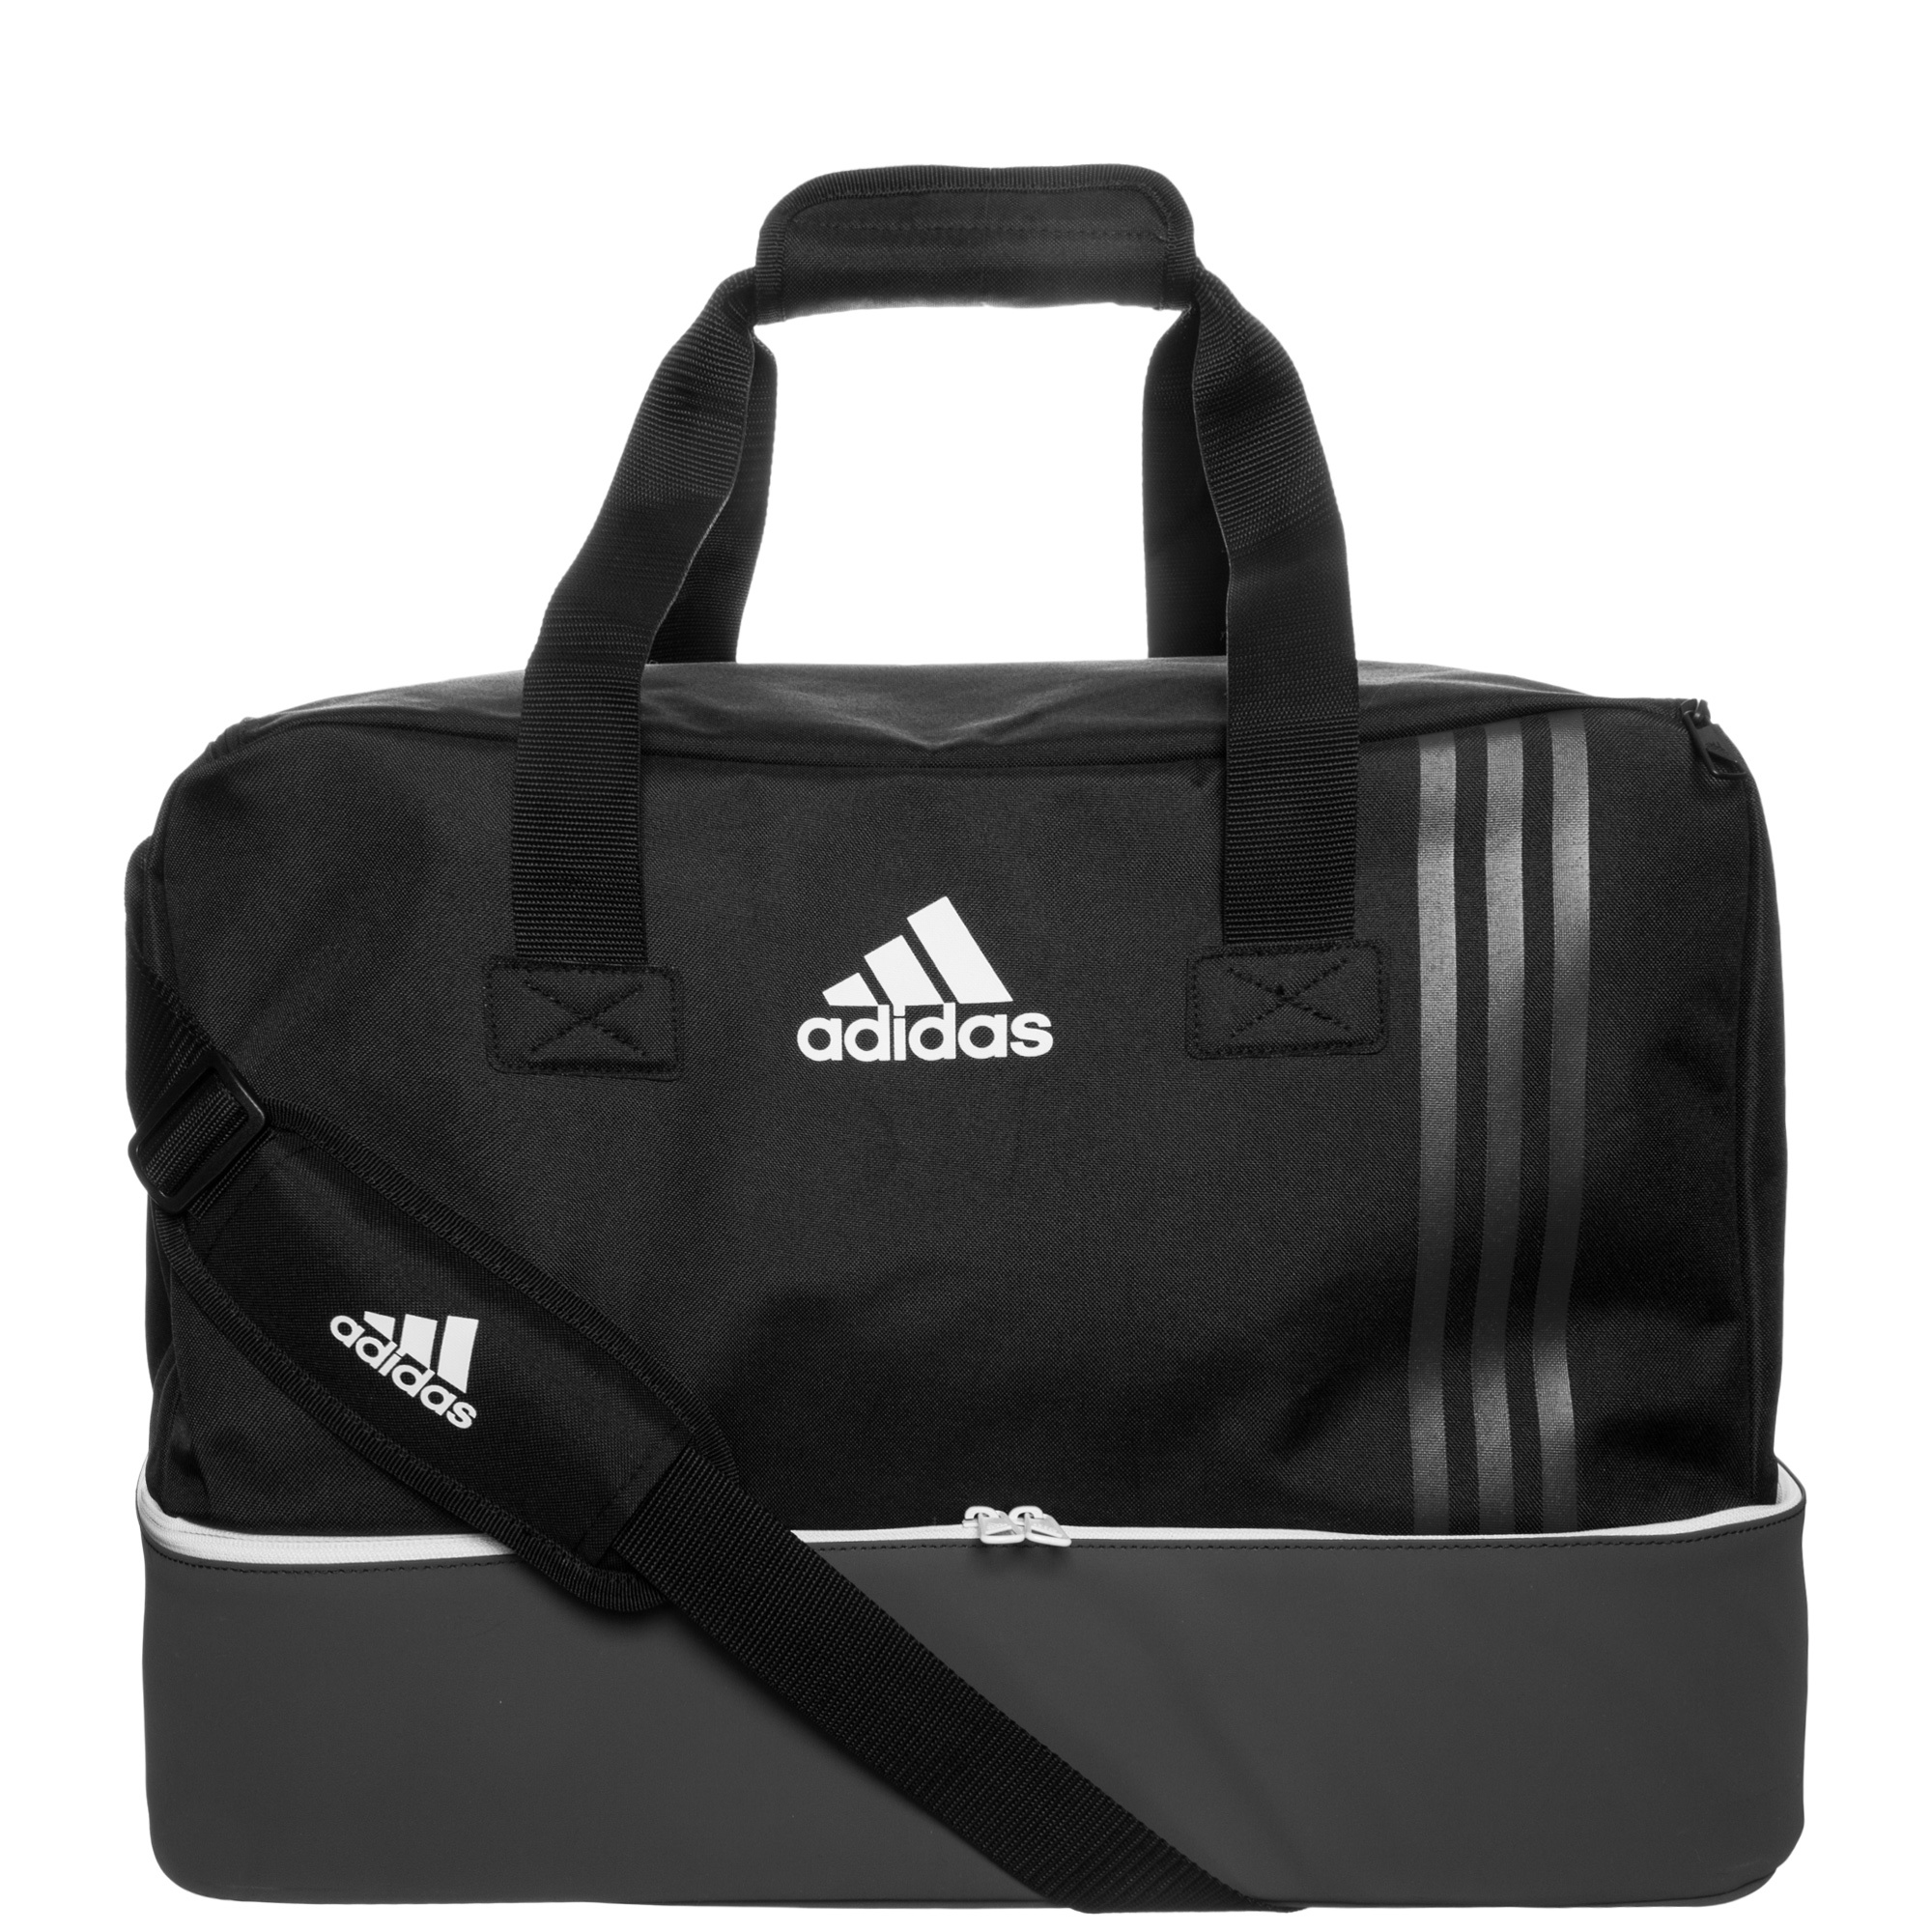 adidas Tiro Team Bag with Bottom Compartment Medium | B46123 | FOOTY.COM